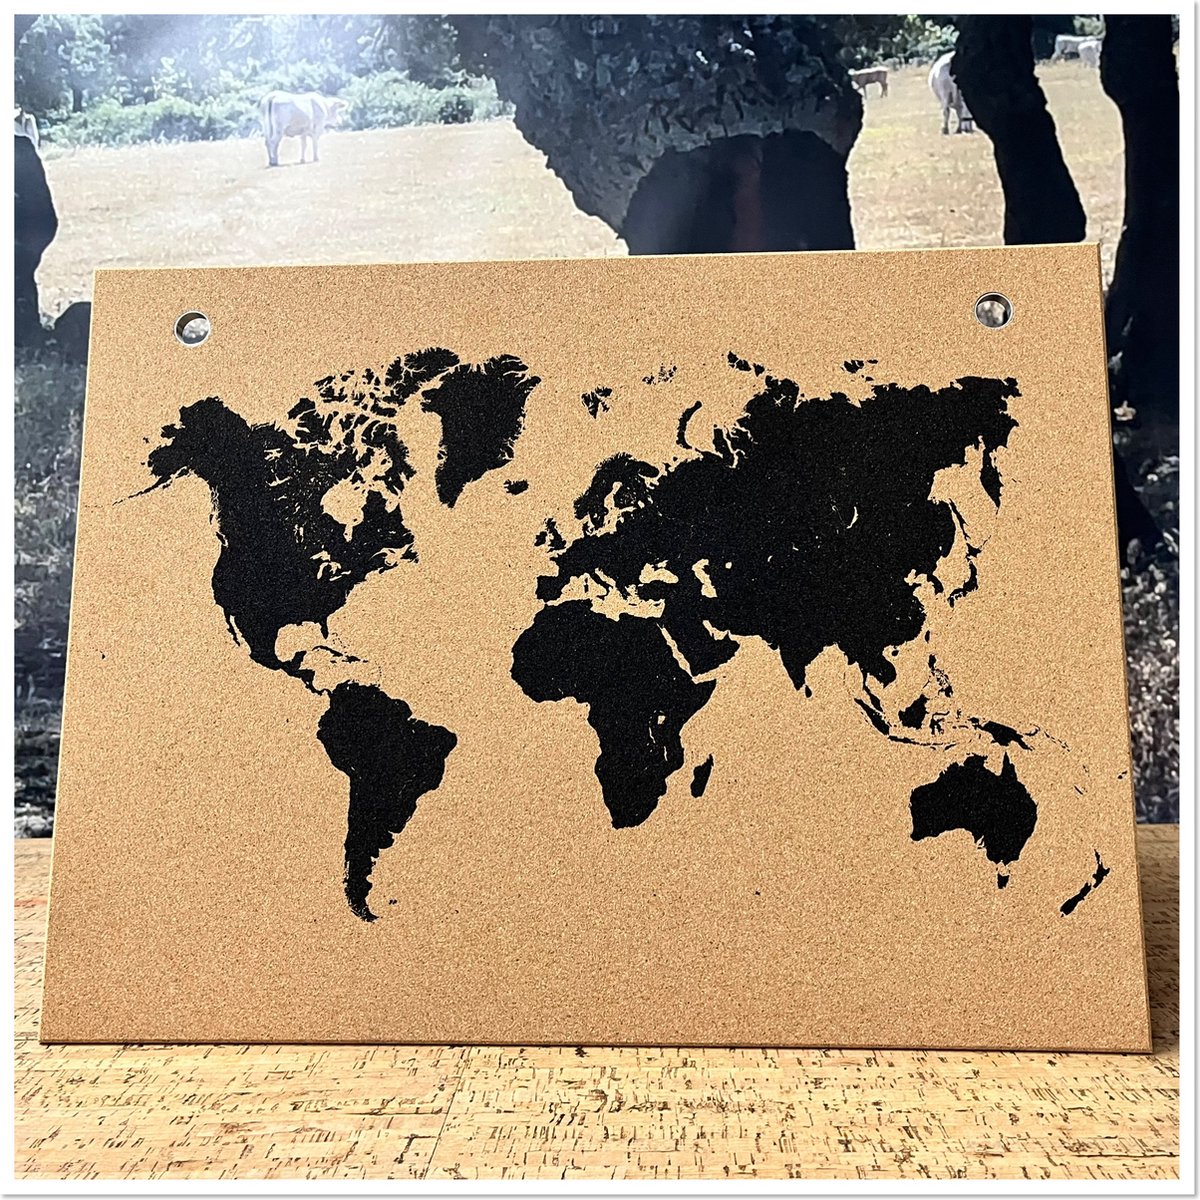 Carte du Monde en Liège 102 x 50 cm avec 10 punaises